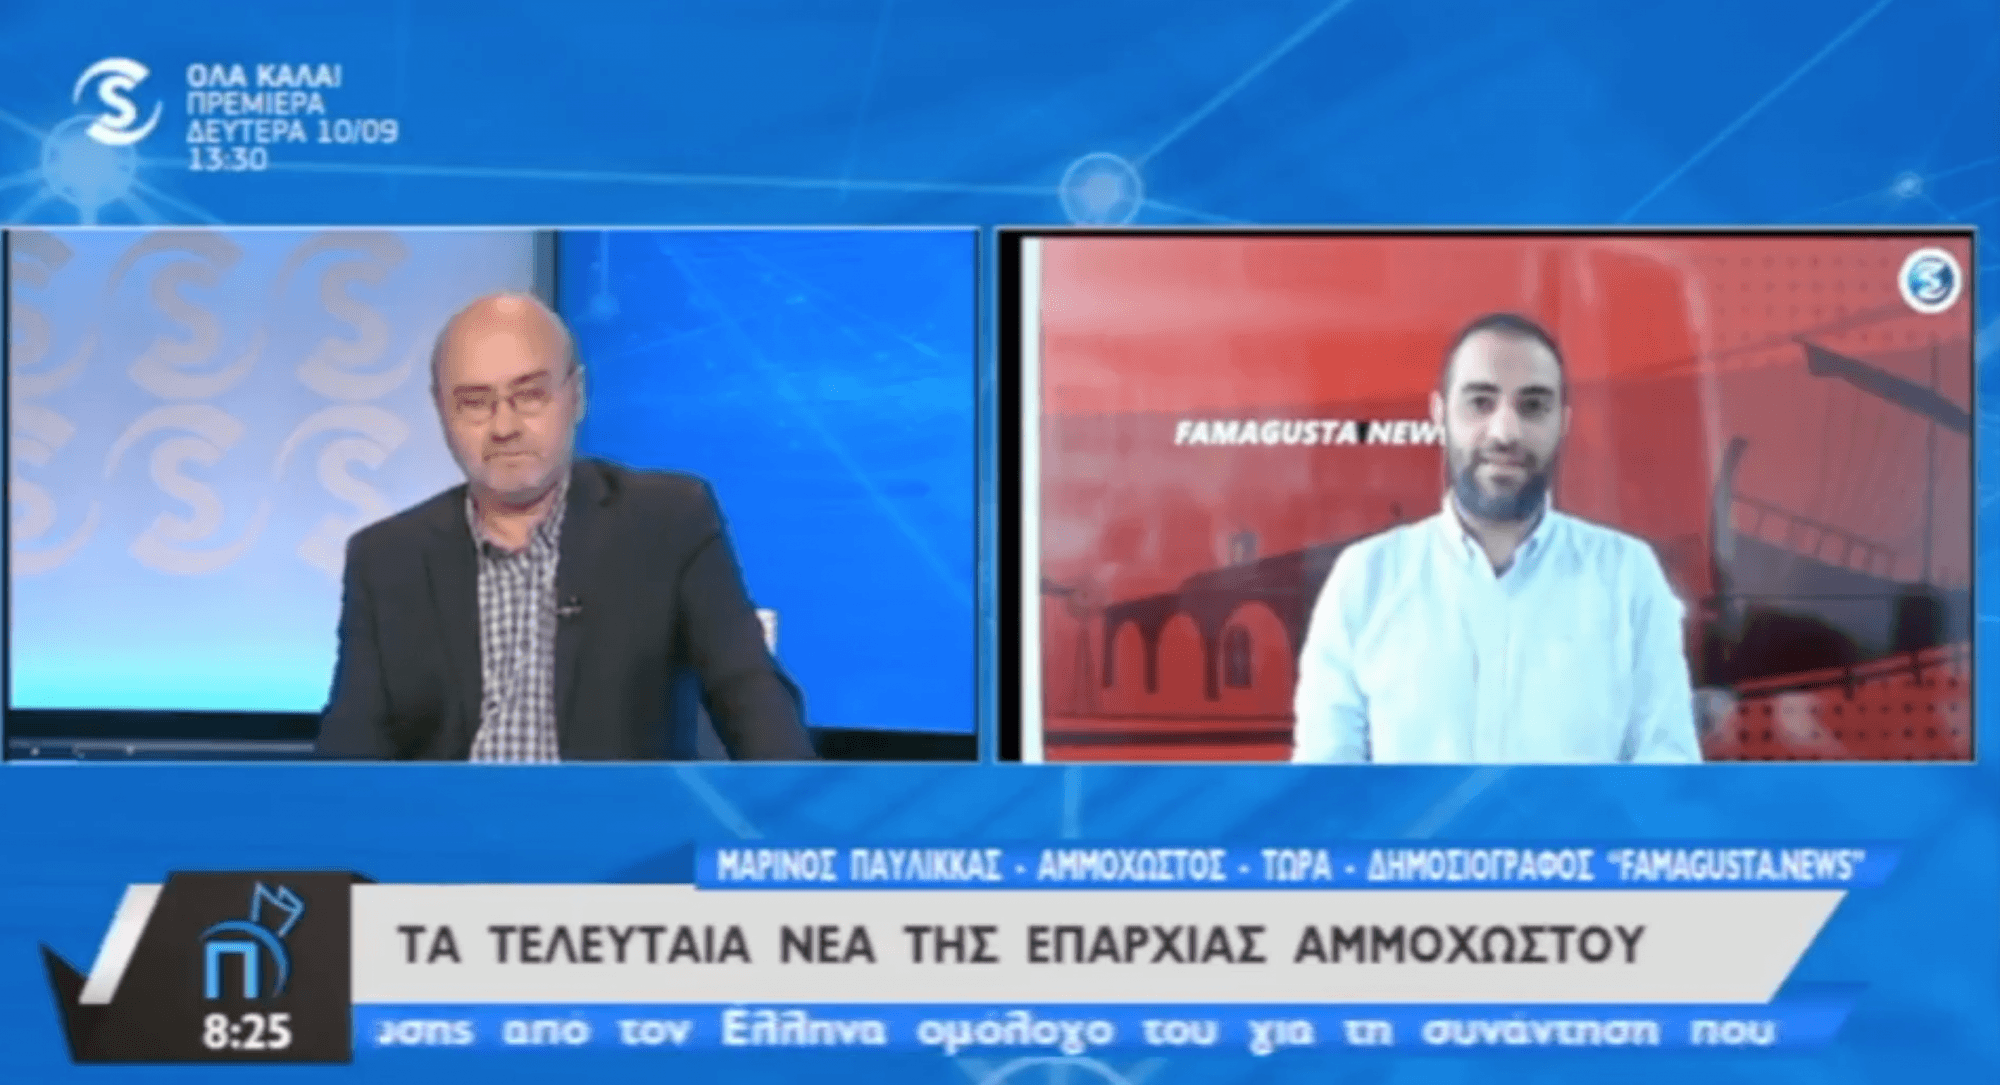 Снимок 2018 09 10 15.14.45 Famagusta.News, FamagustaNews, SIGMA TV, Famagusta News, Первая полоса